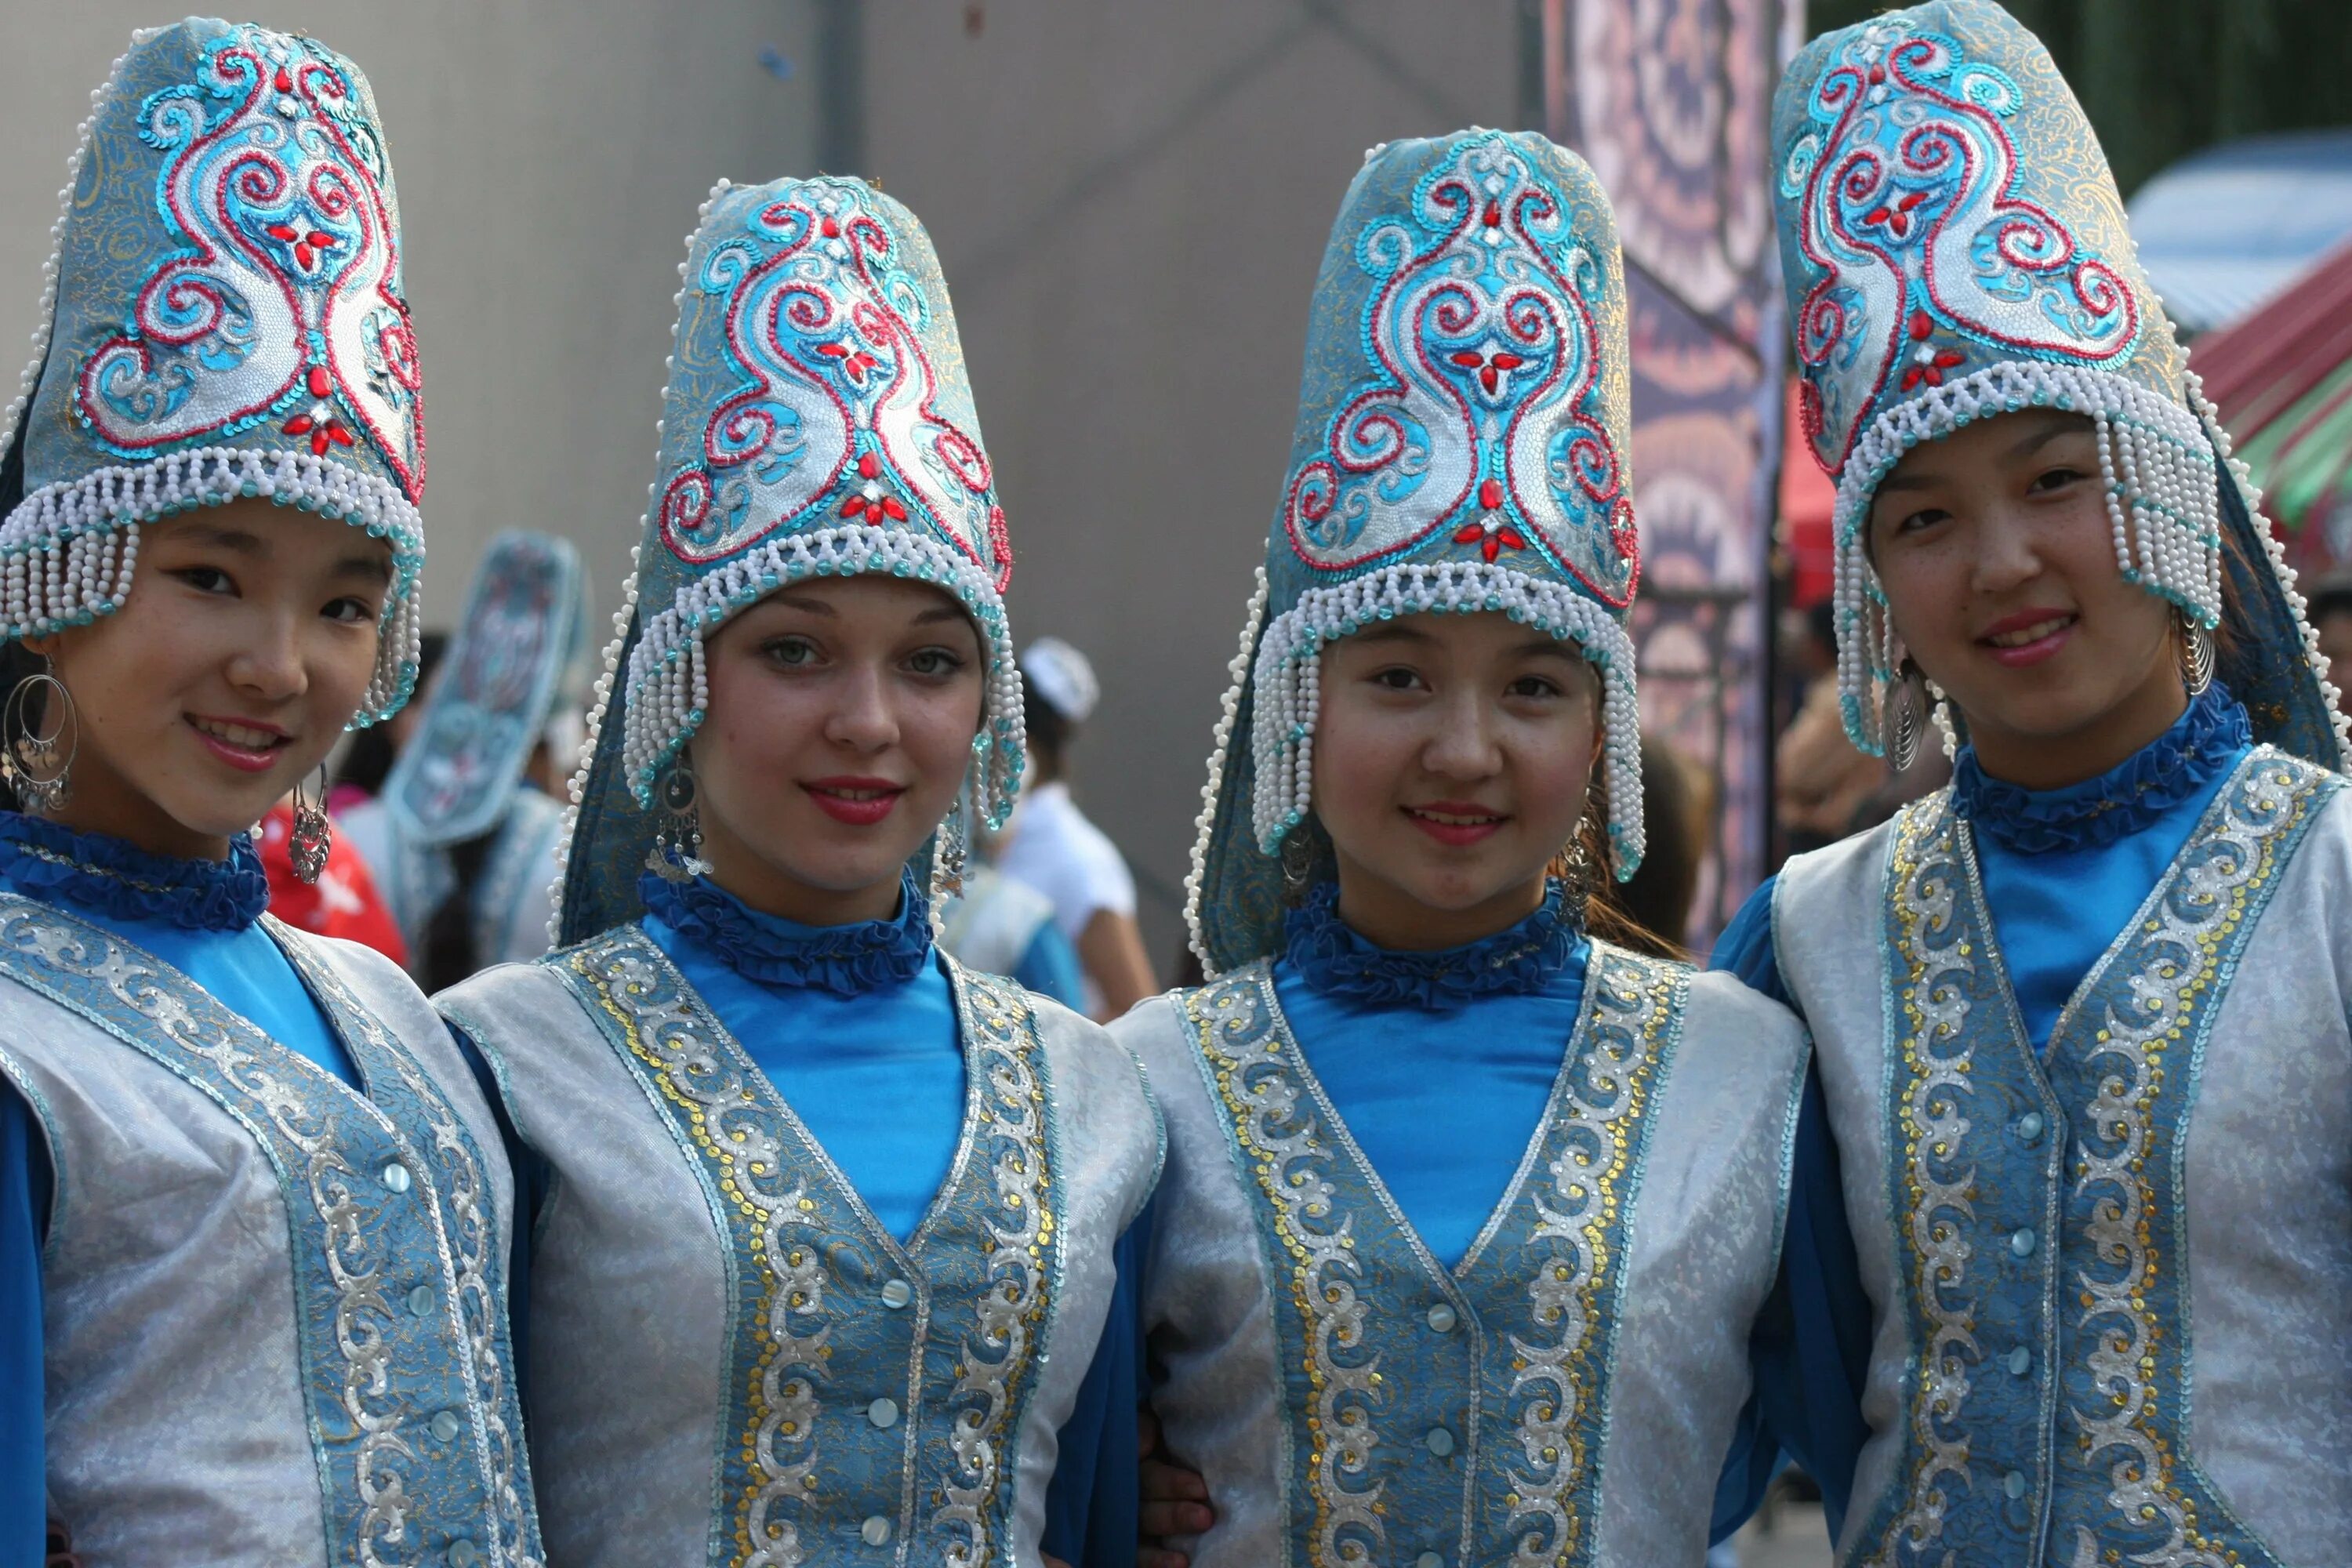 Национальный костюм Киргизии. Киргизистан Национальная одежда. Нац головной убор Киргизии Элечек. Традициональная одежда Киргизия. Киргиз контакте